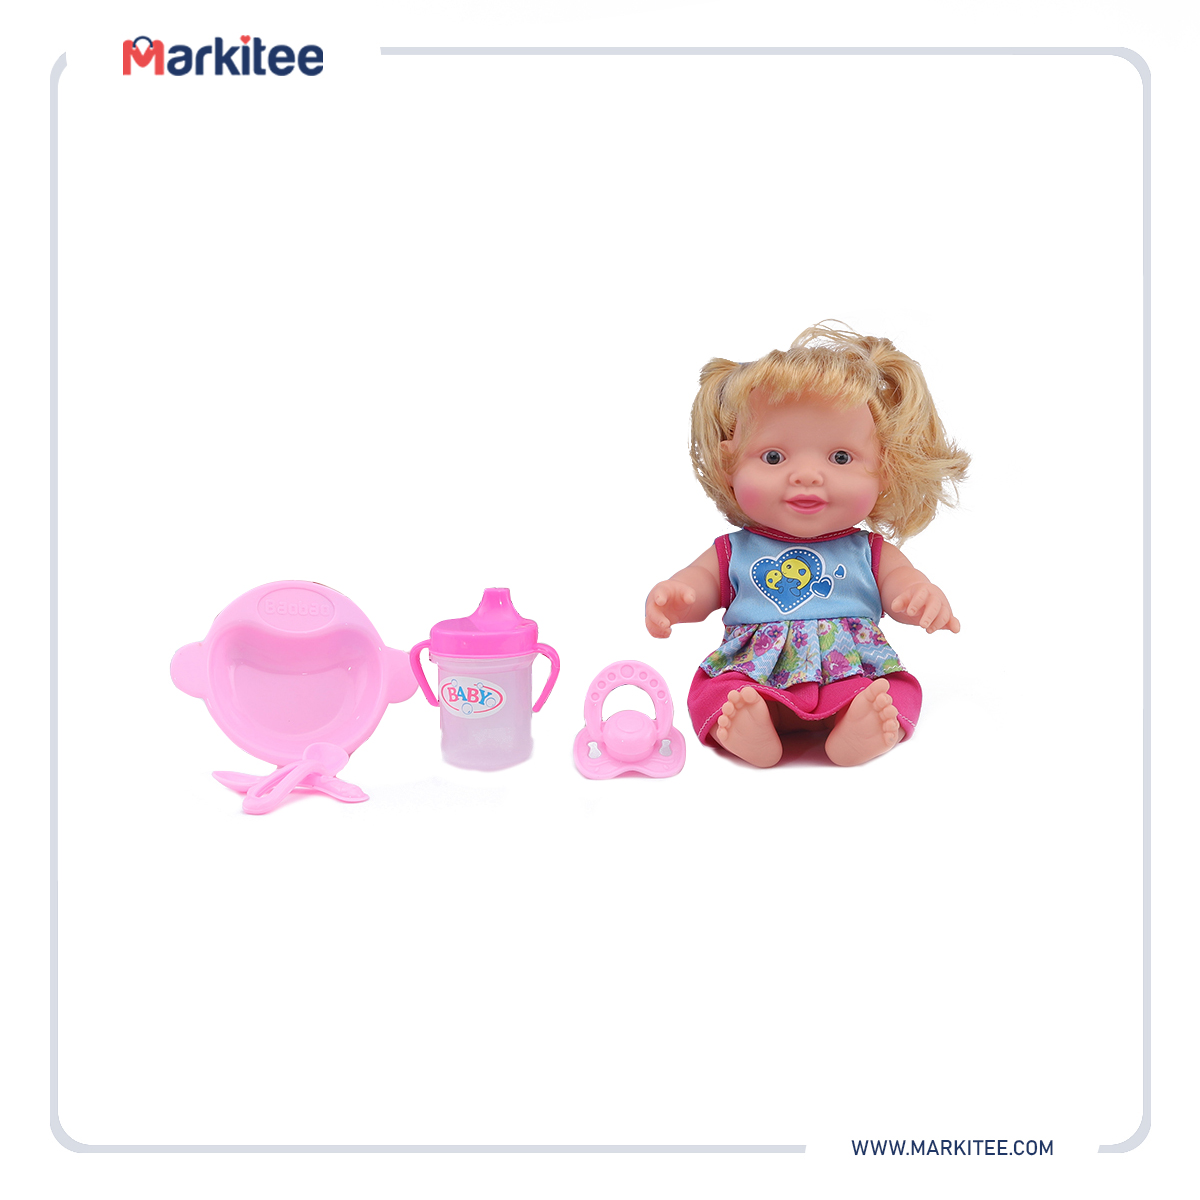 ماركيتي-markitee-20220601011953637_Markitee-Toys-Ty-490-1(3).jpg